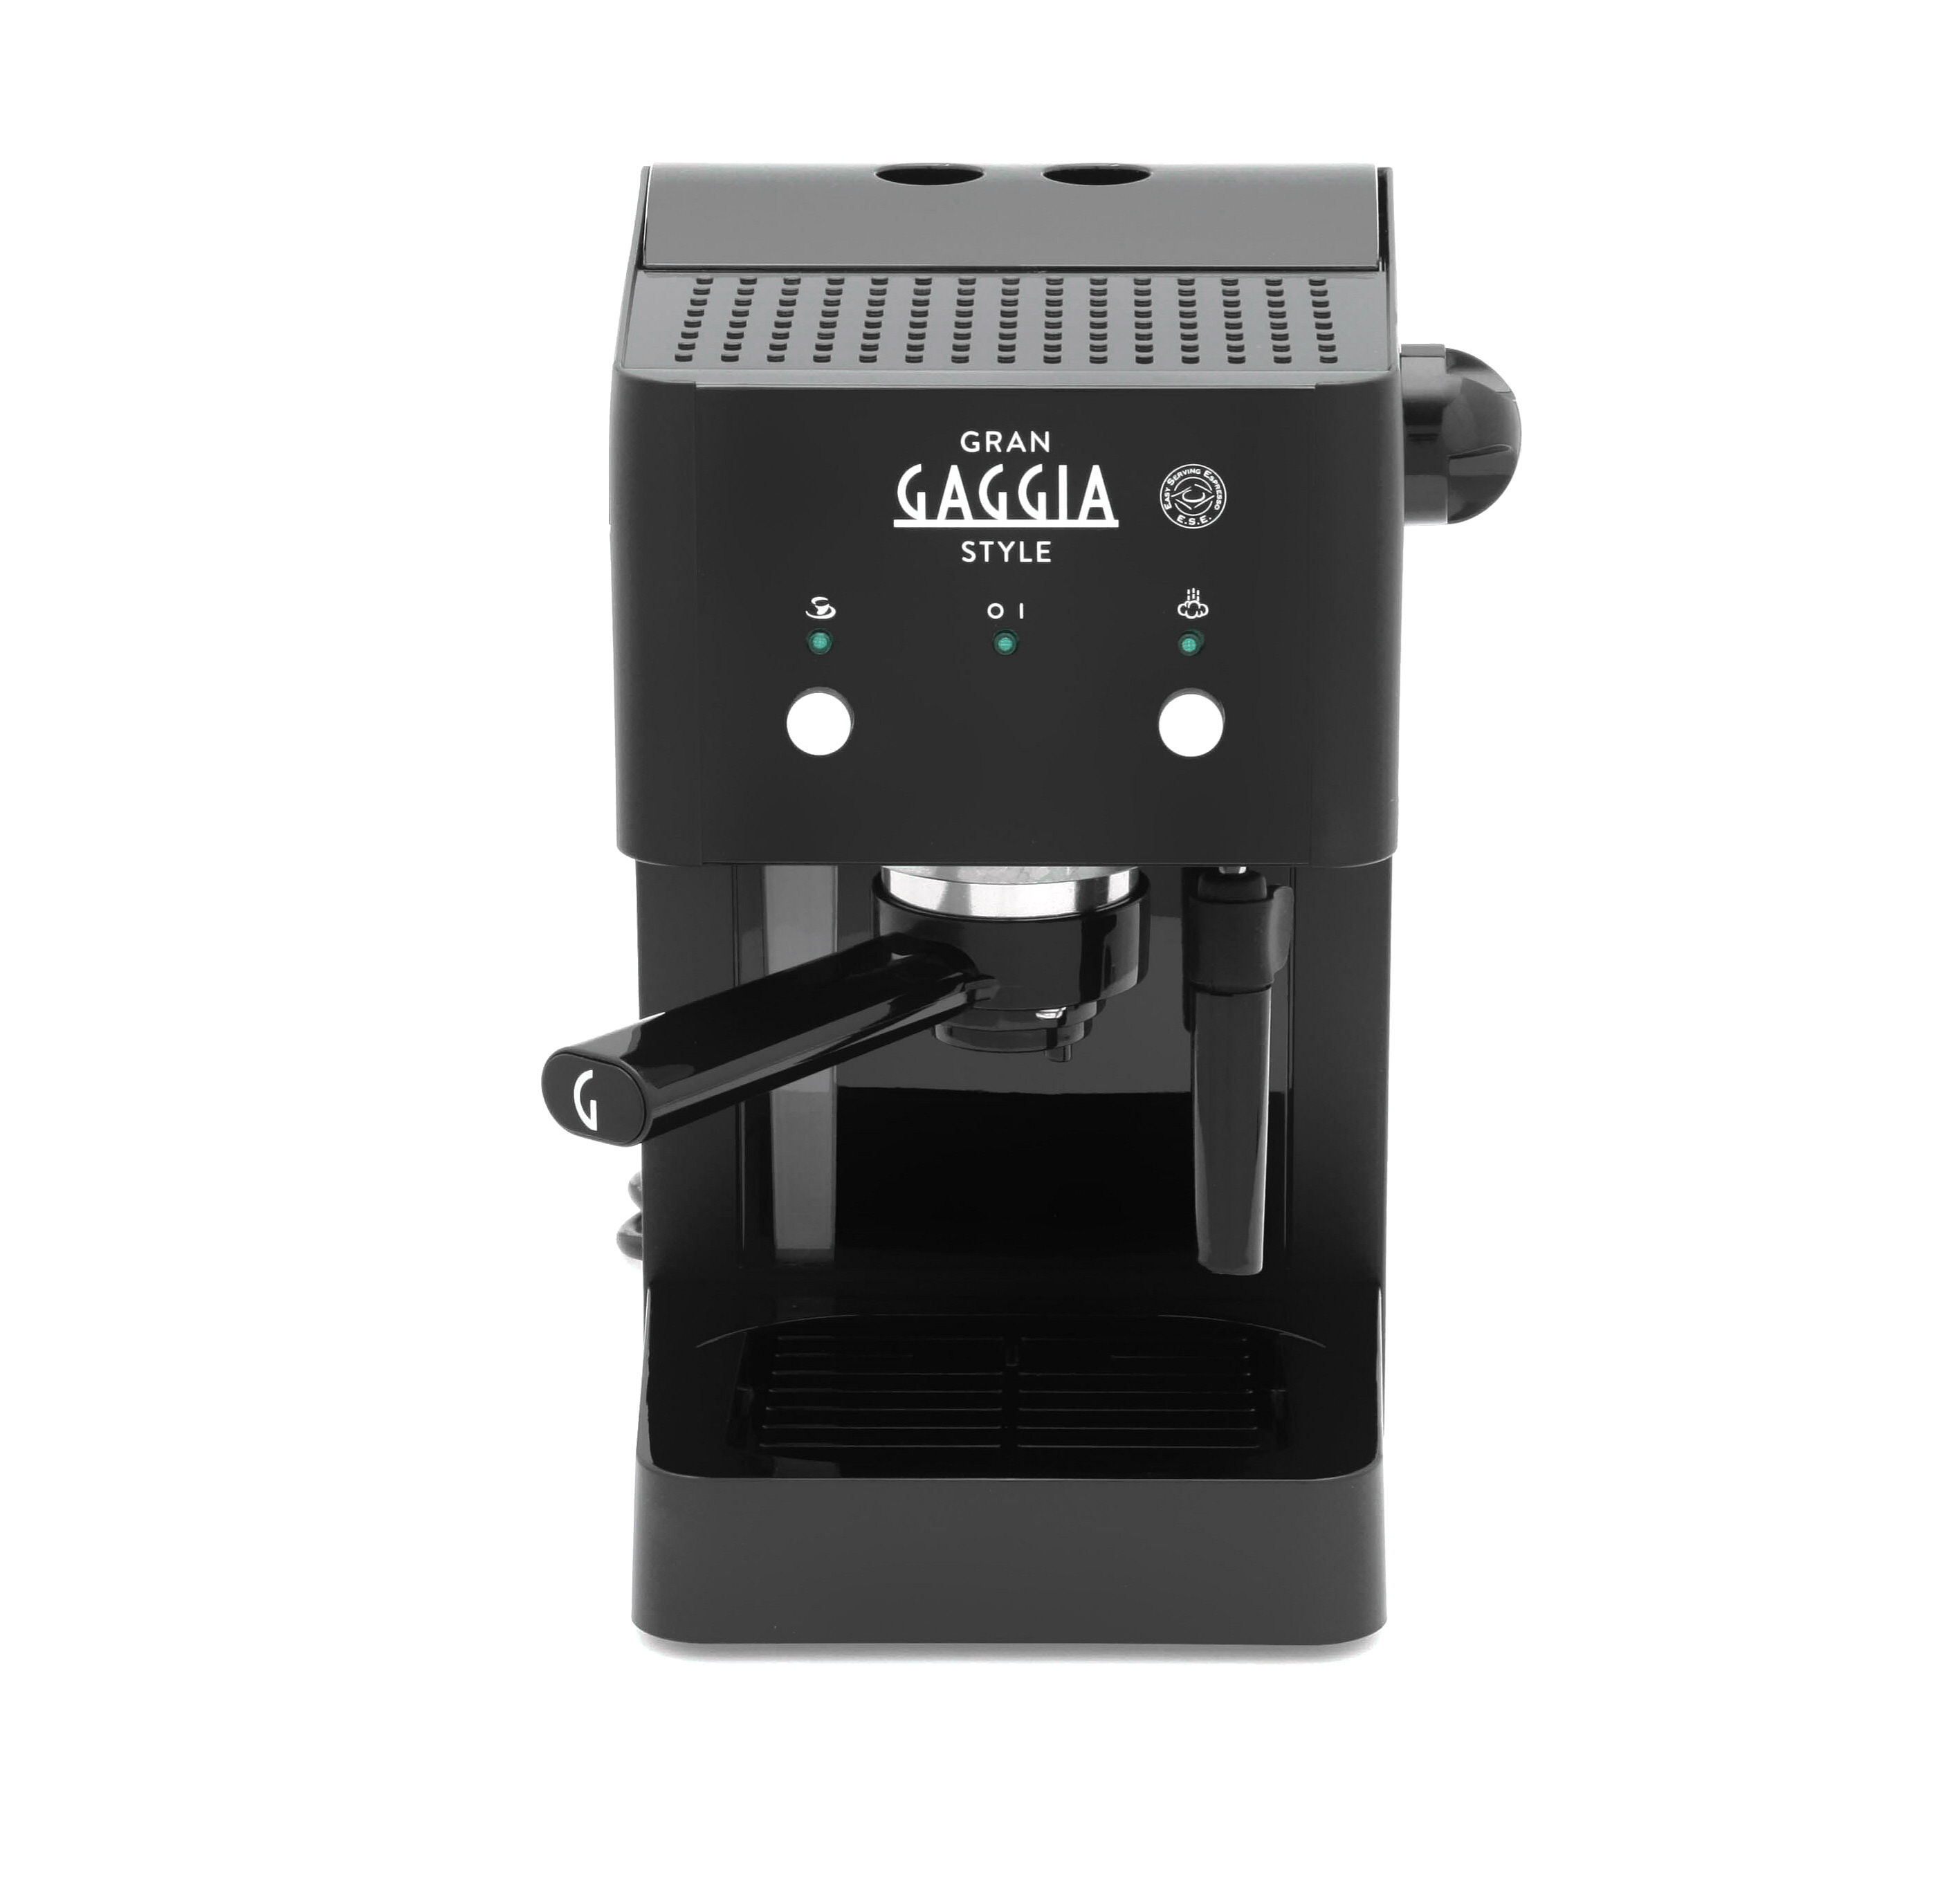 Gaggia Gran Style Espresso Coffee Machine - Black